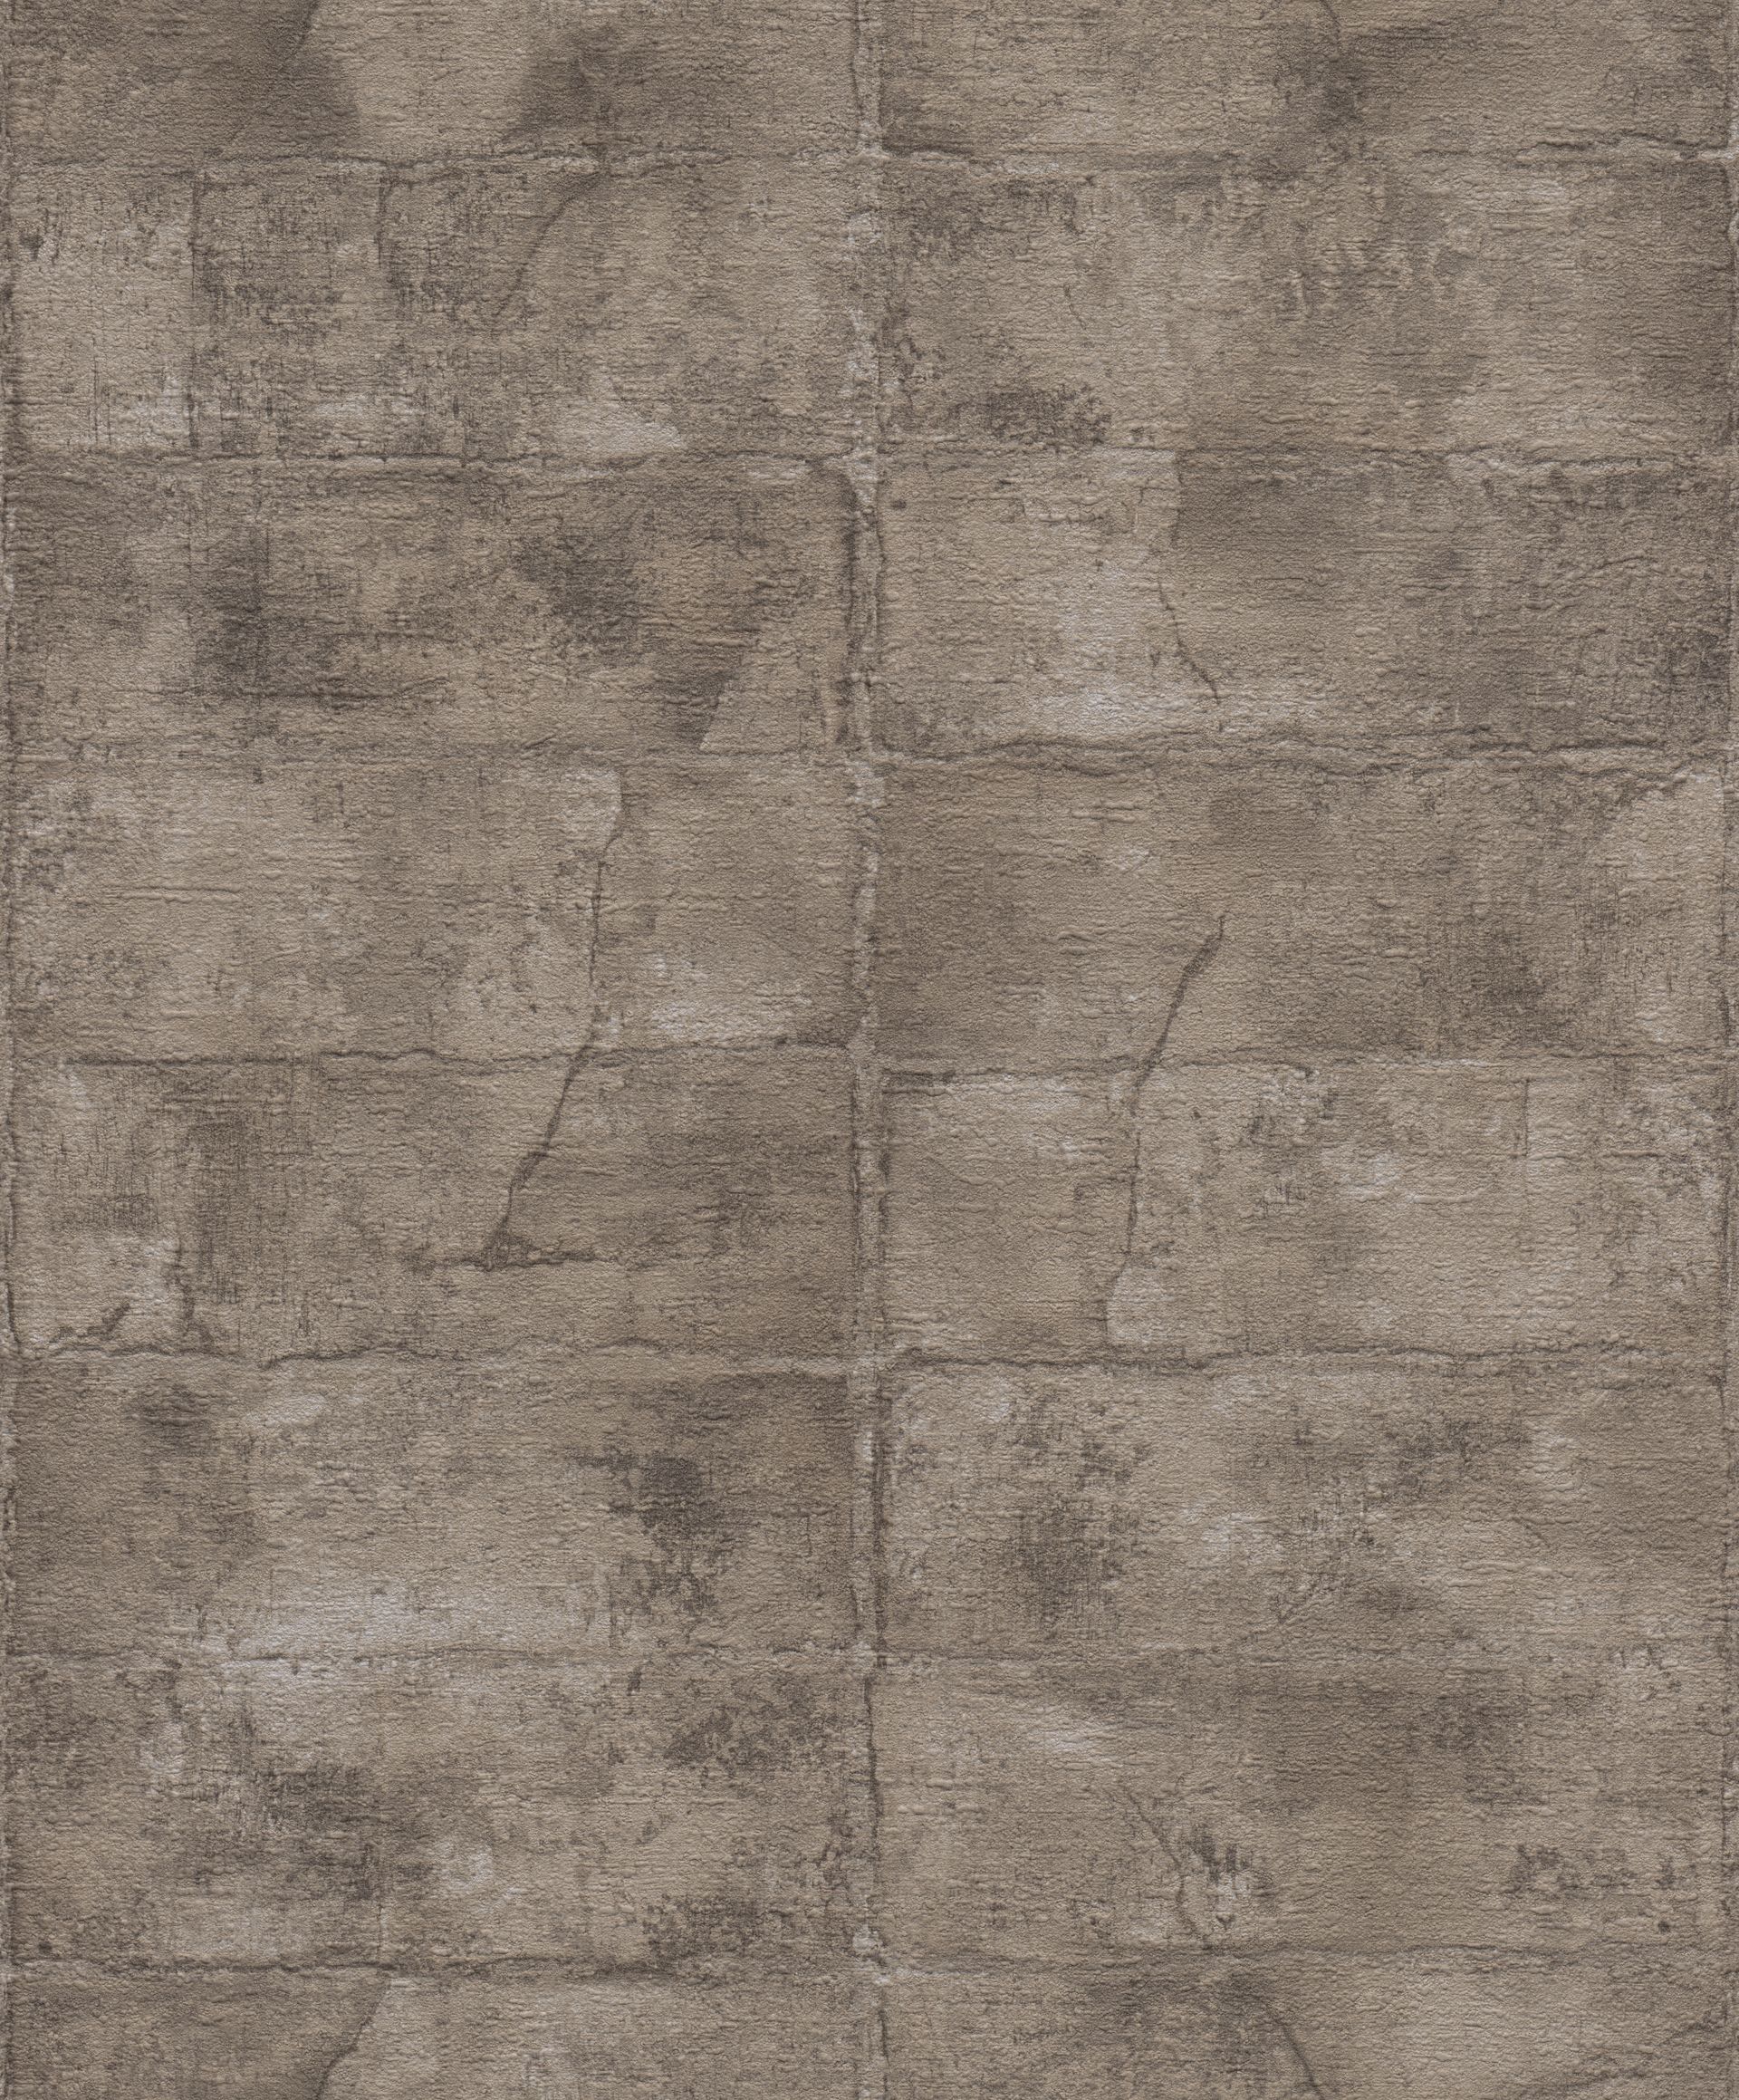 Rasch Concrete, Industrial, schwarz braun 520163